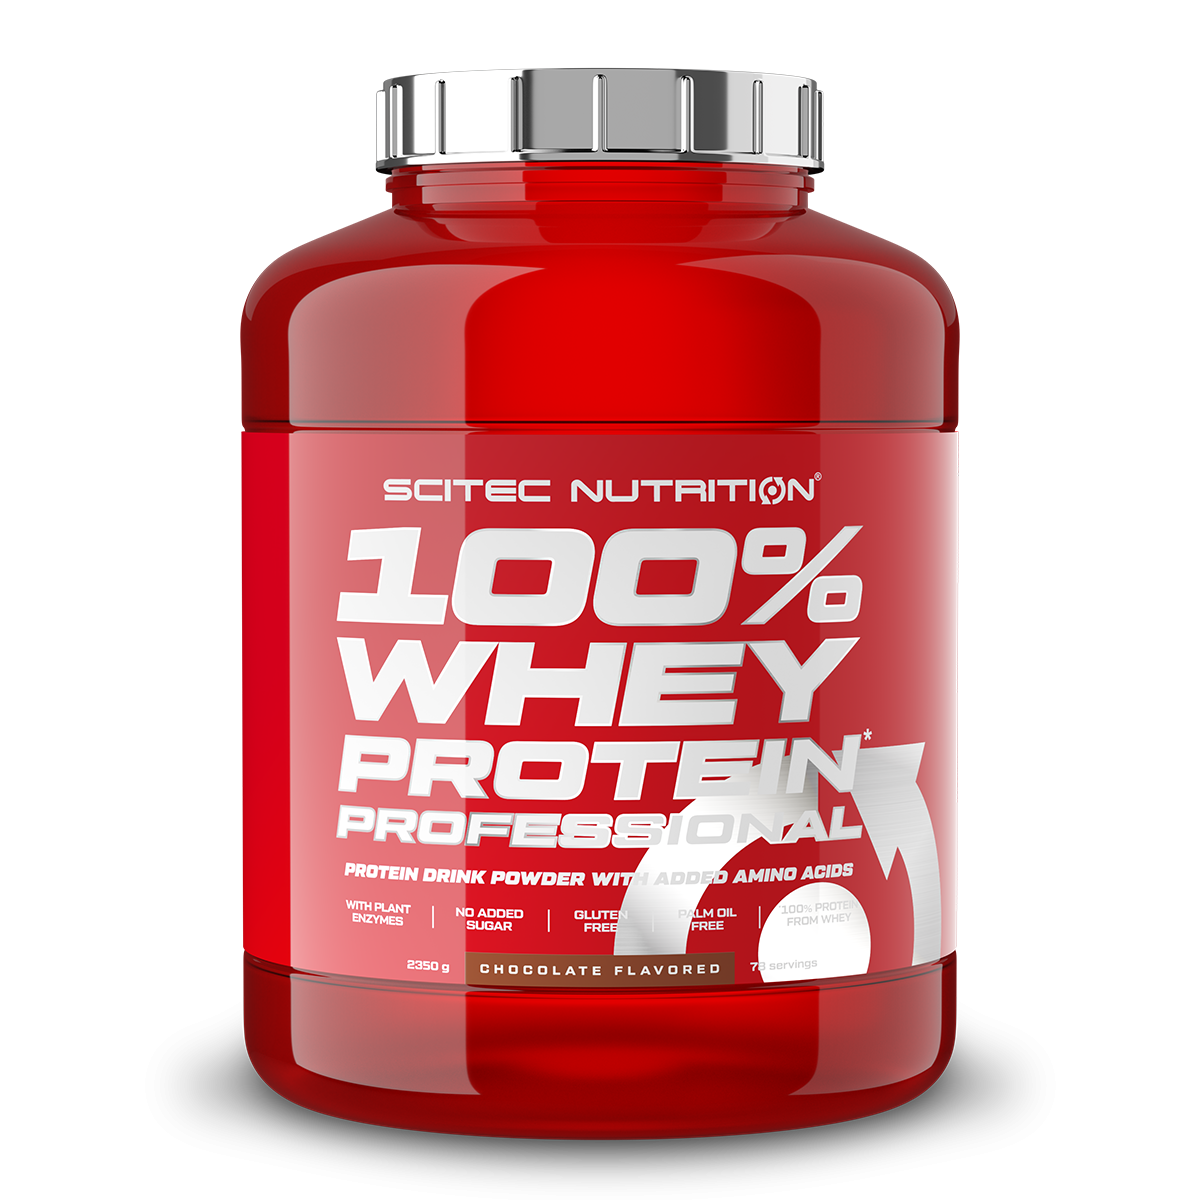 Scitec Nutrition 100% Whey Protein Professional mit extra zusätzlichen Aminosäuren und Verdauungsenzymen, Beinhaltet keinen Zuckerzusatz, 2.35 kg, Eis Kaffee